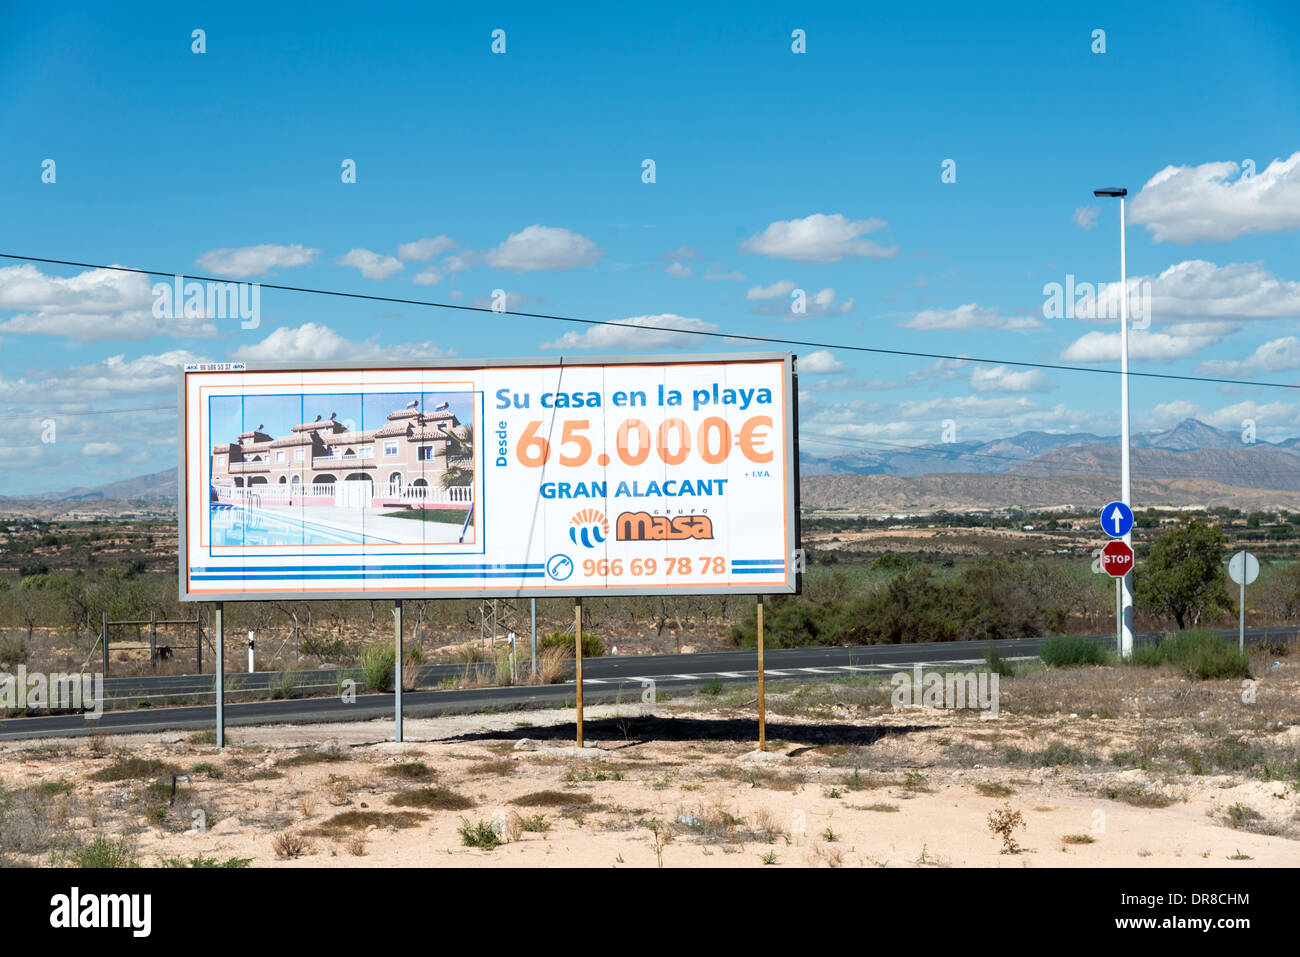 Nueva publicidad en vallas en el camino de desarrollo de propiedad en la ciudad de Gran Alacant cerca de Alicante, Costa Blanca, España Foto de stock